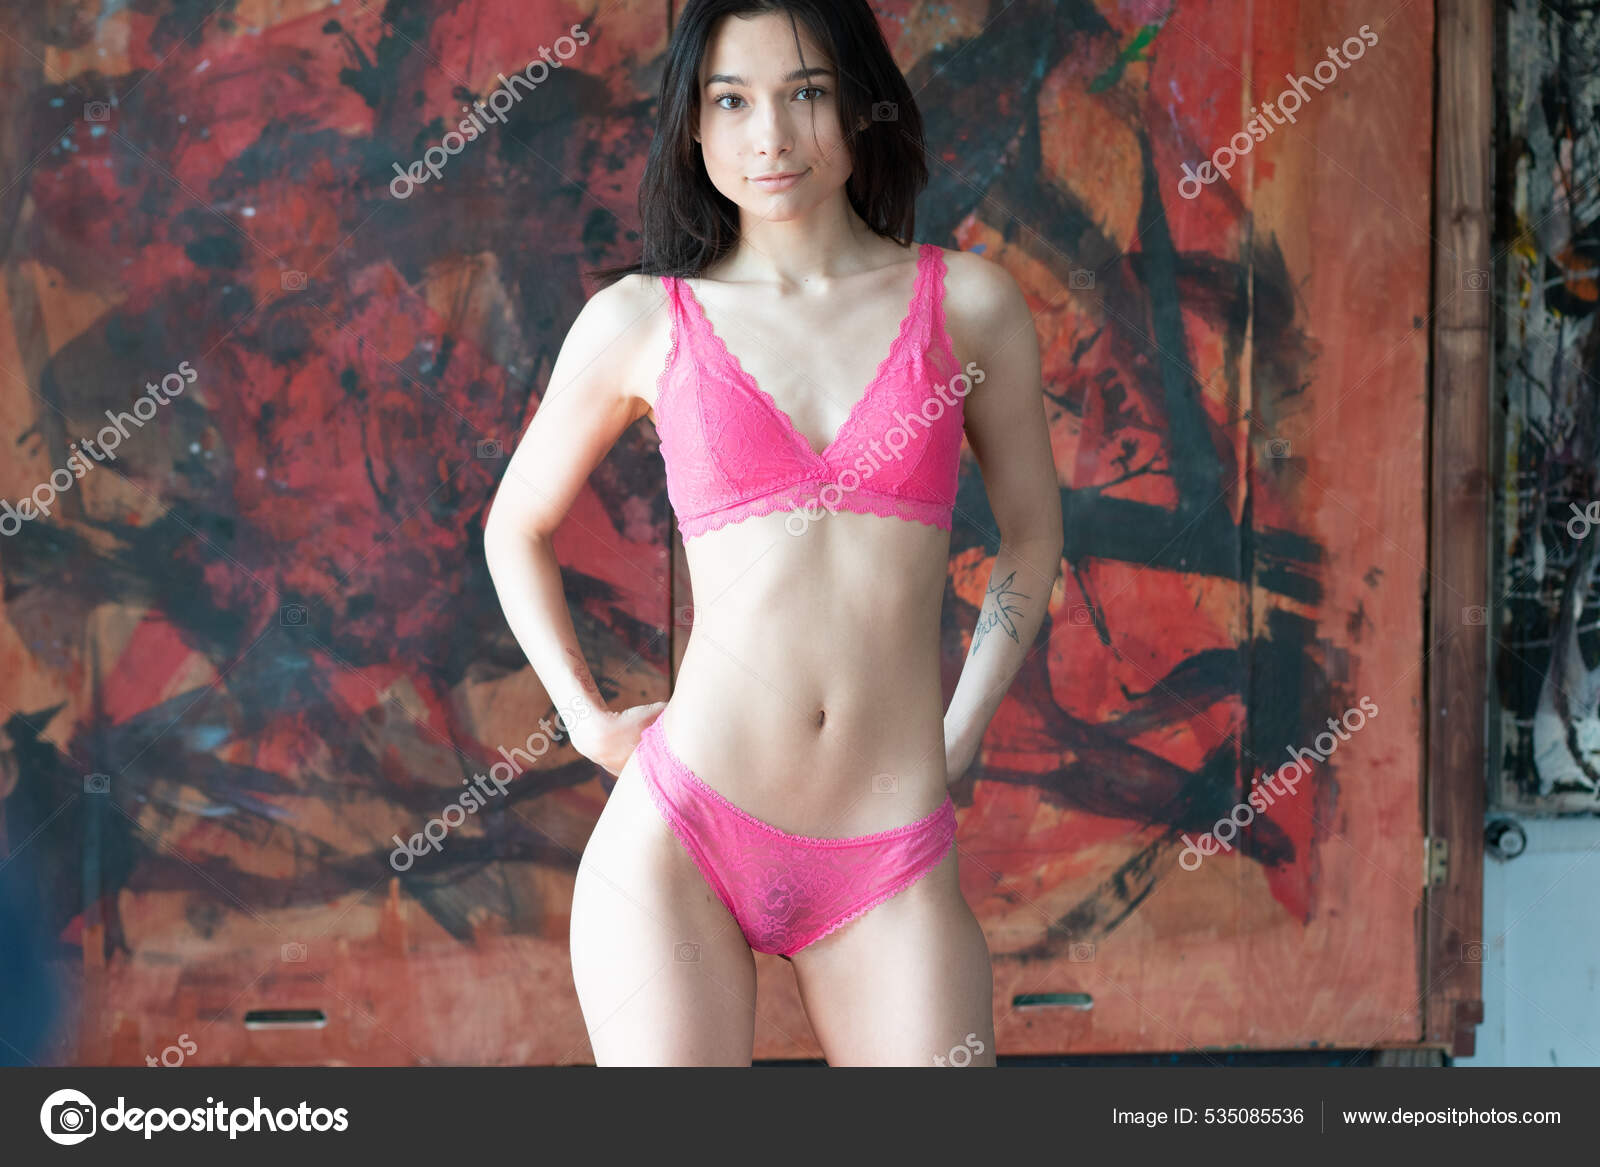 https://st.depositphotos.com/10086424/53508/i/1600/depositphotos_535085536-stock-photo-young-beautiful-woman-posing-red.jpg